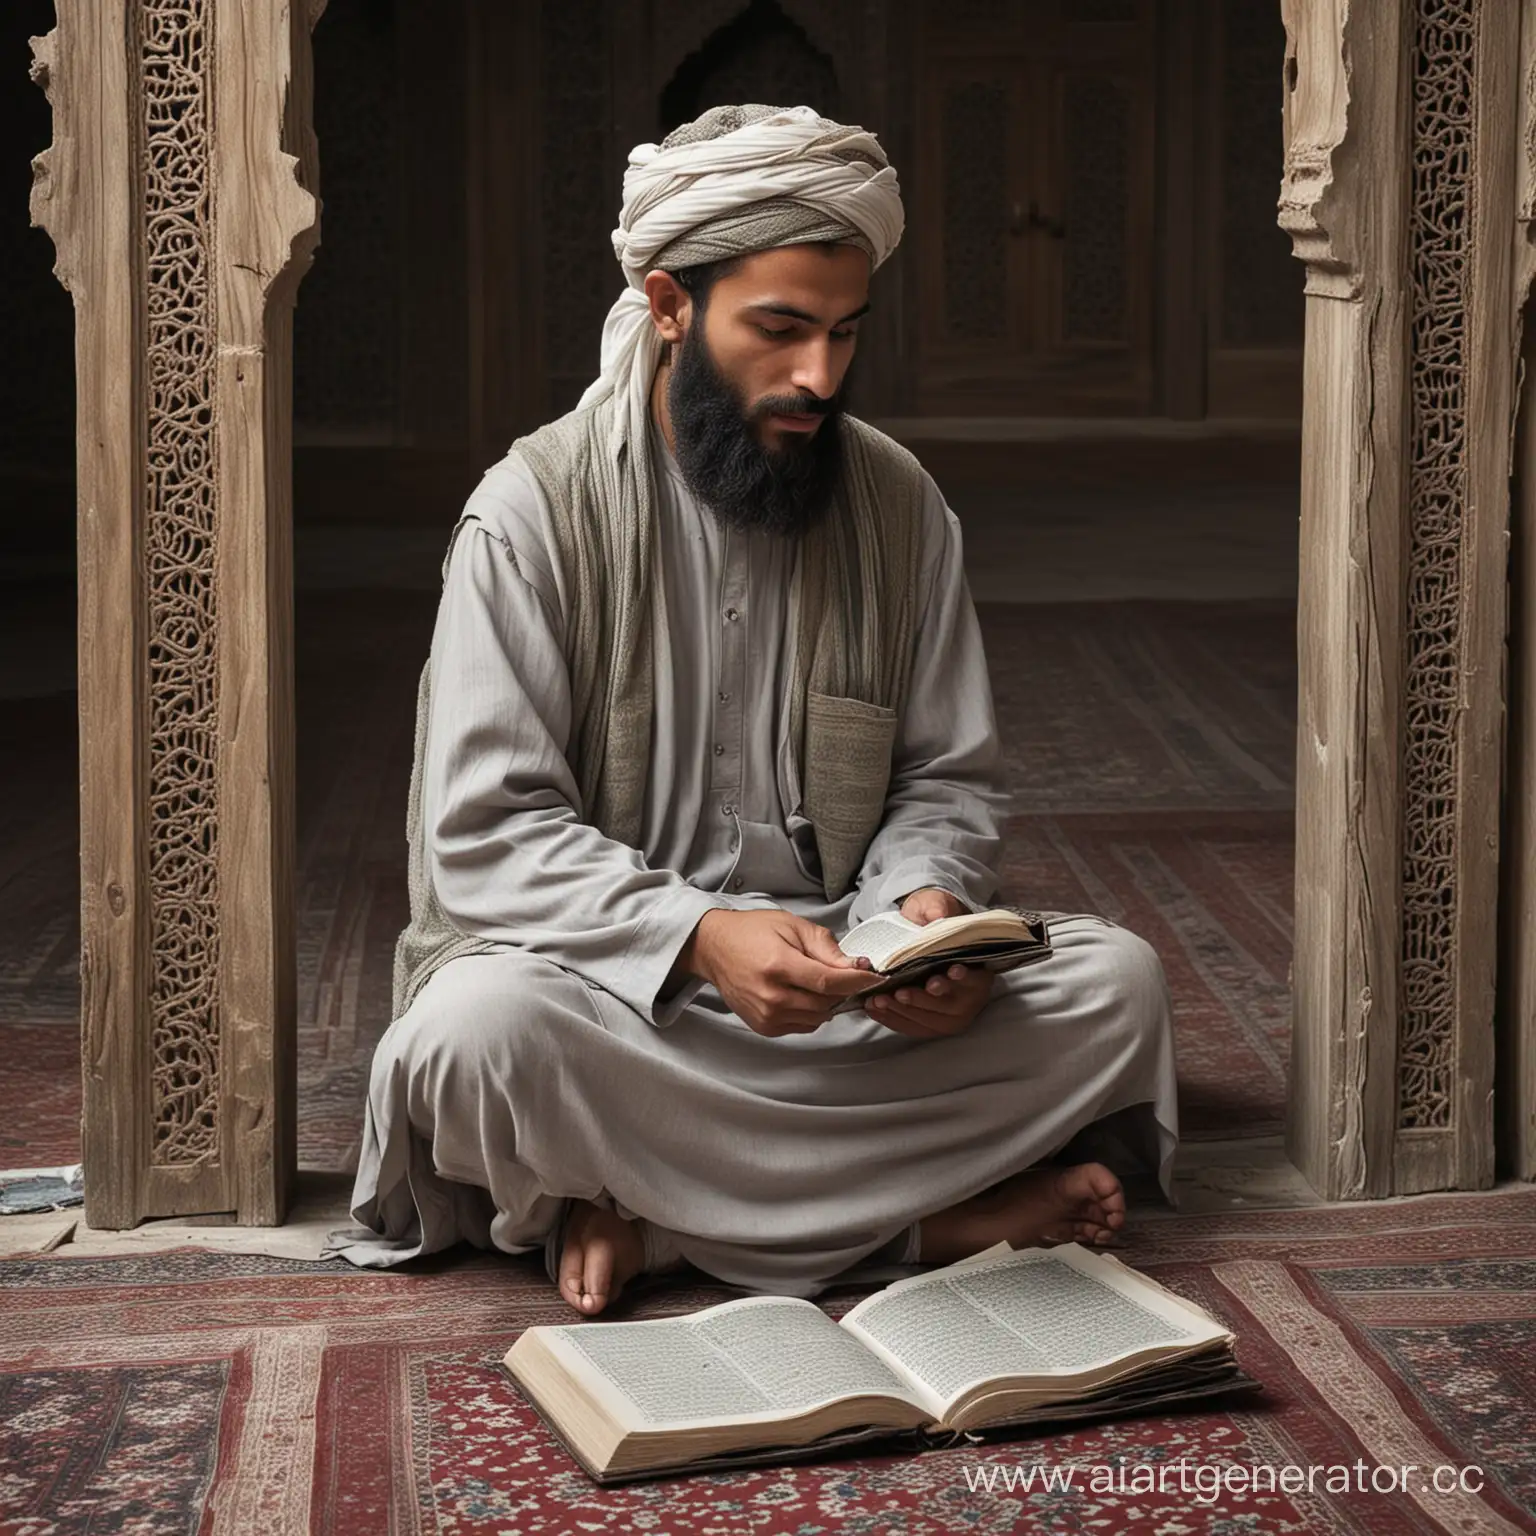 мусульманин вахабист в потрепанной  одежде, с бородой в старой деревянной мечети , читает коран. интерьер в серых тонах. в 9 веке